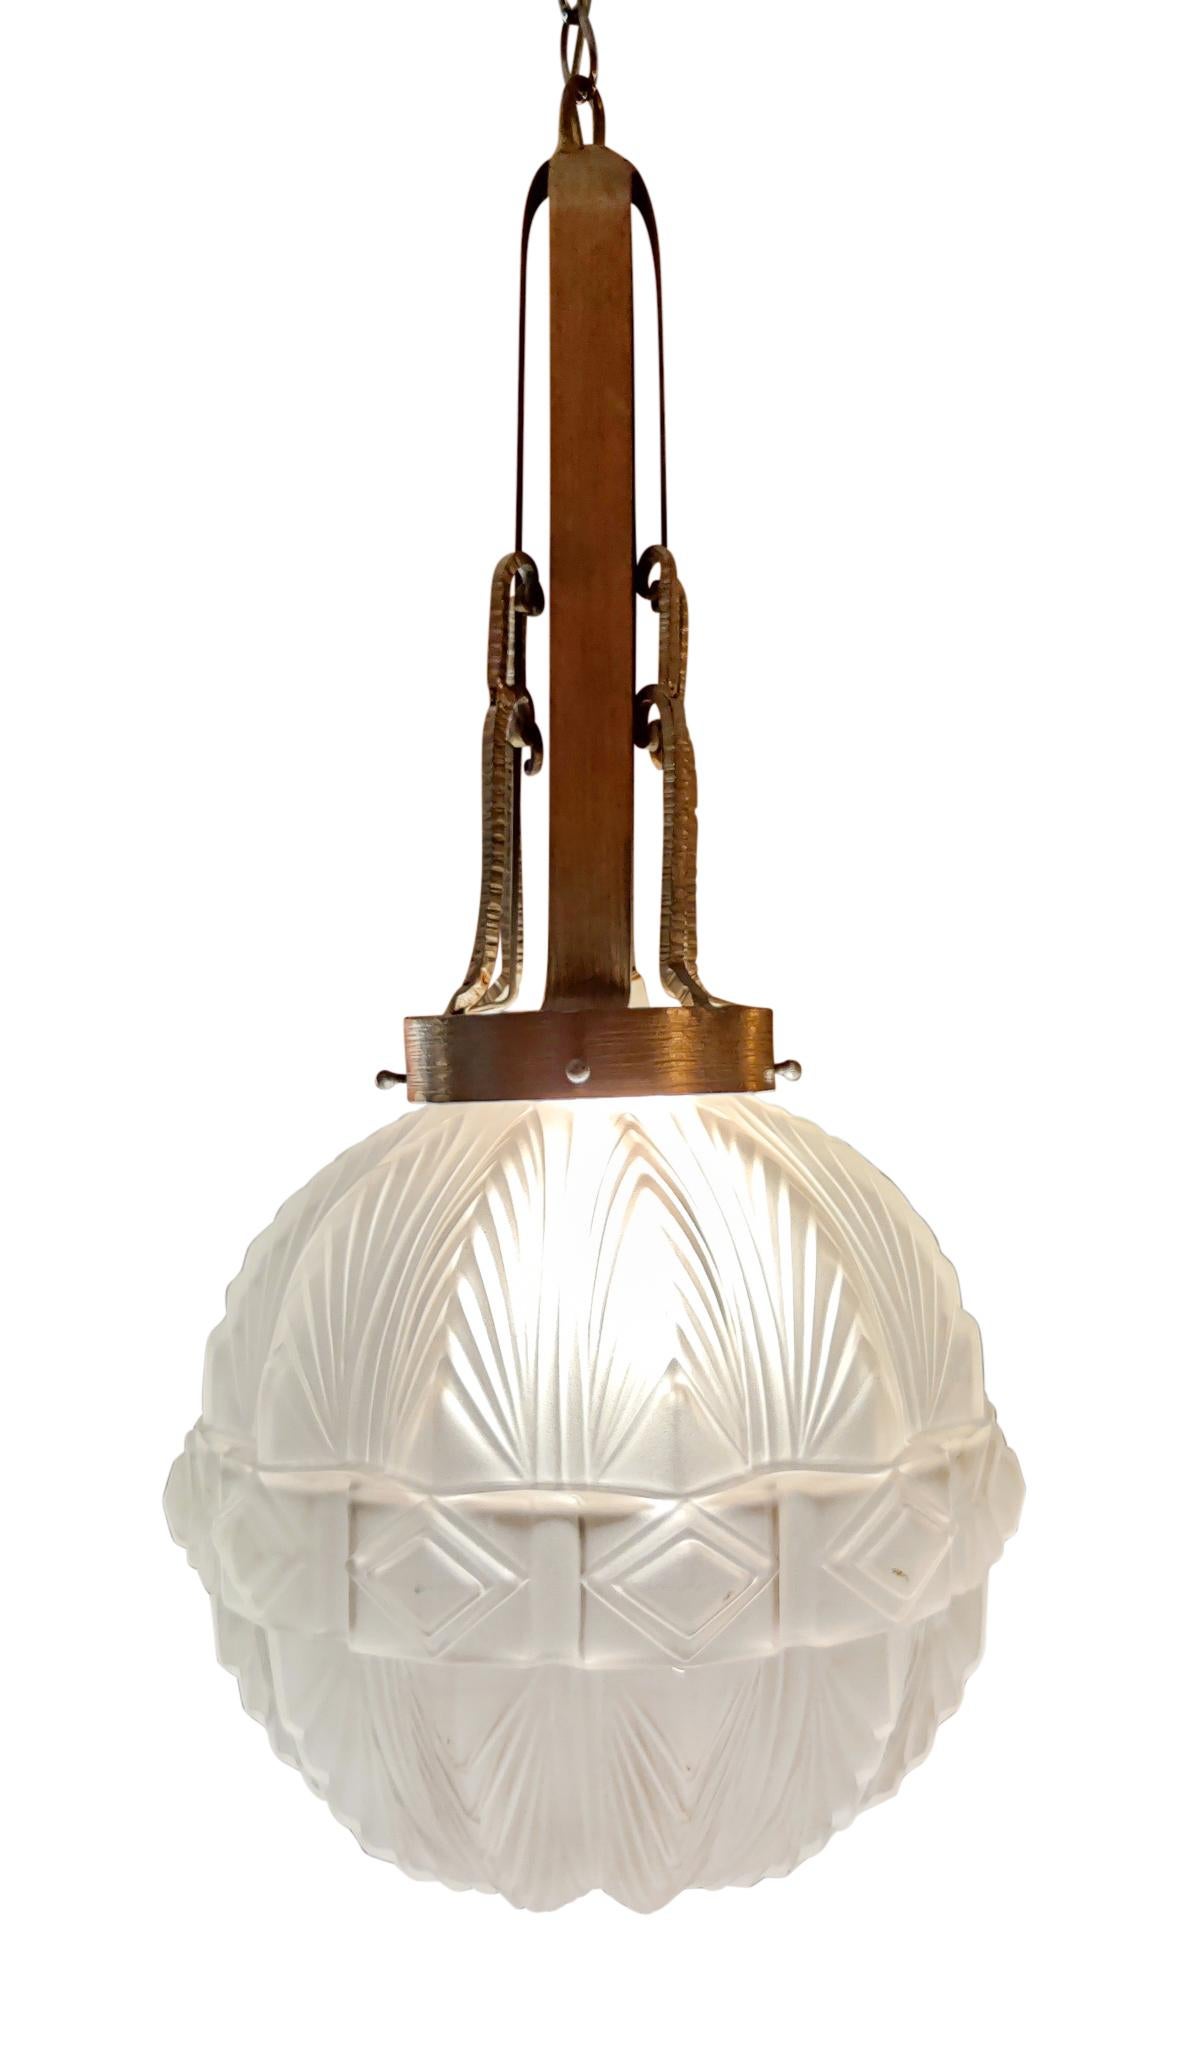 Magnifique lustre lanterne Art déco Sabino, à douille unique, ampoule à incandescence standard, puissance variable, câblé et prêt à l'emploi. Le globe en verre dépoli est exempt de cassures et de réparations et ne présente pas d'éclats visibles lors